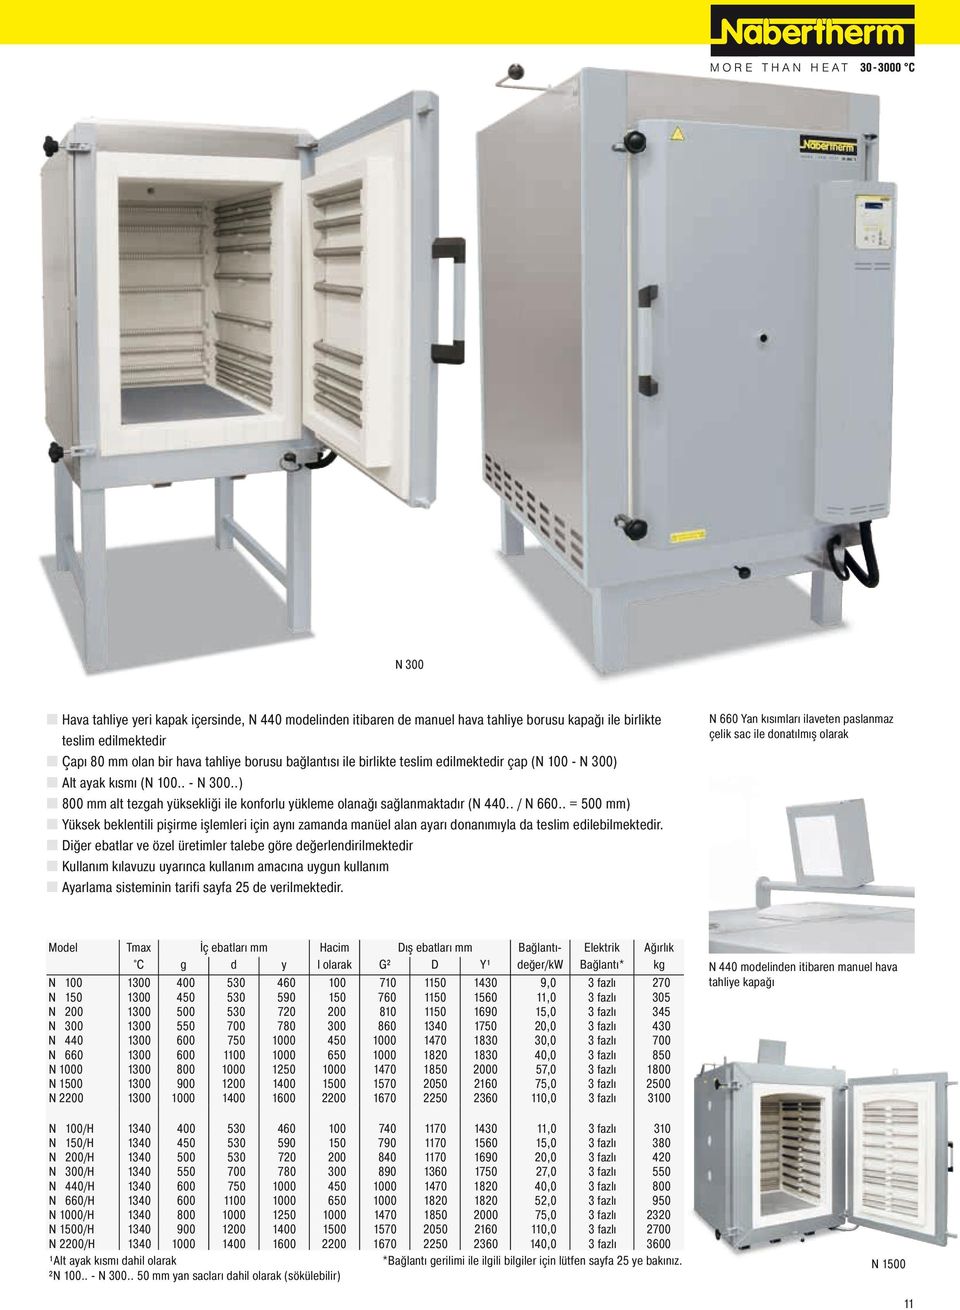 . = 500 mm) Yüksek beklentili pişirme işlemleri için aynı zamanda manüel alan ayarı donanımıyla da teslim edilebilmektedir.